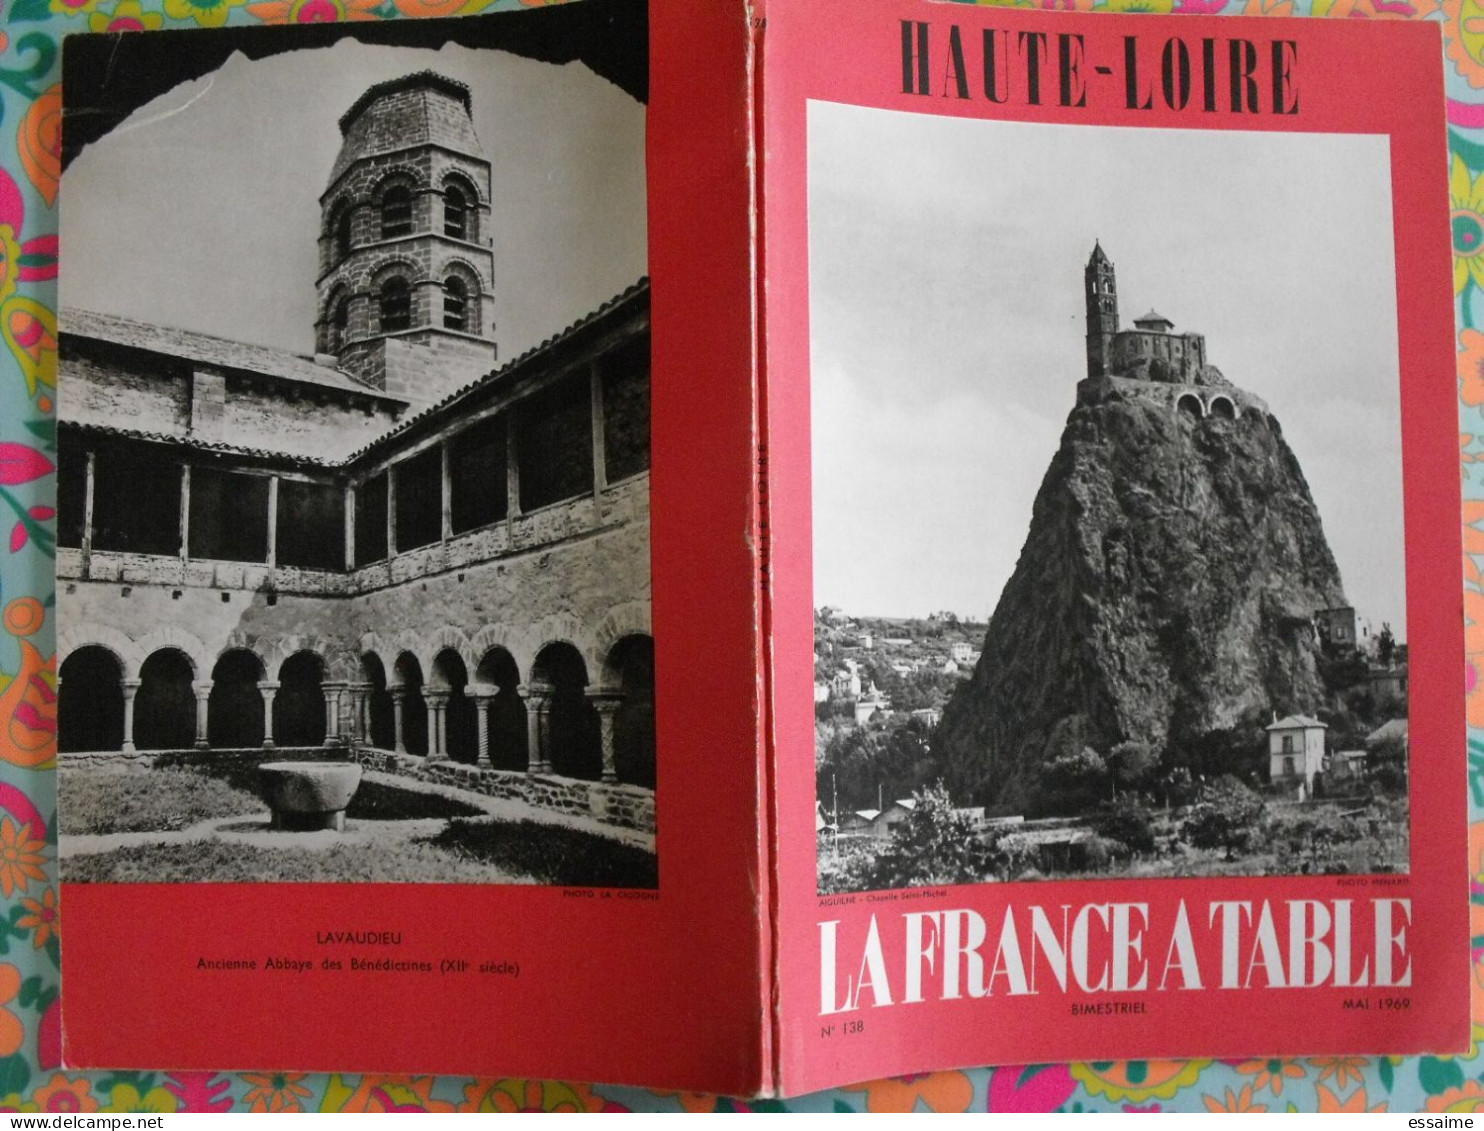 La France à Table N° 138. 1969. Haute-Loire. Lavaudieu Le Puy Brioude Blesle Chaise-dieu Auzon Langeac. Gastronomie - Tourisme & Régions